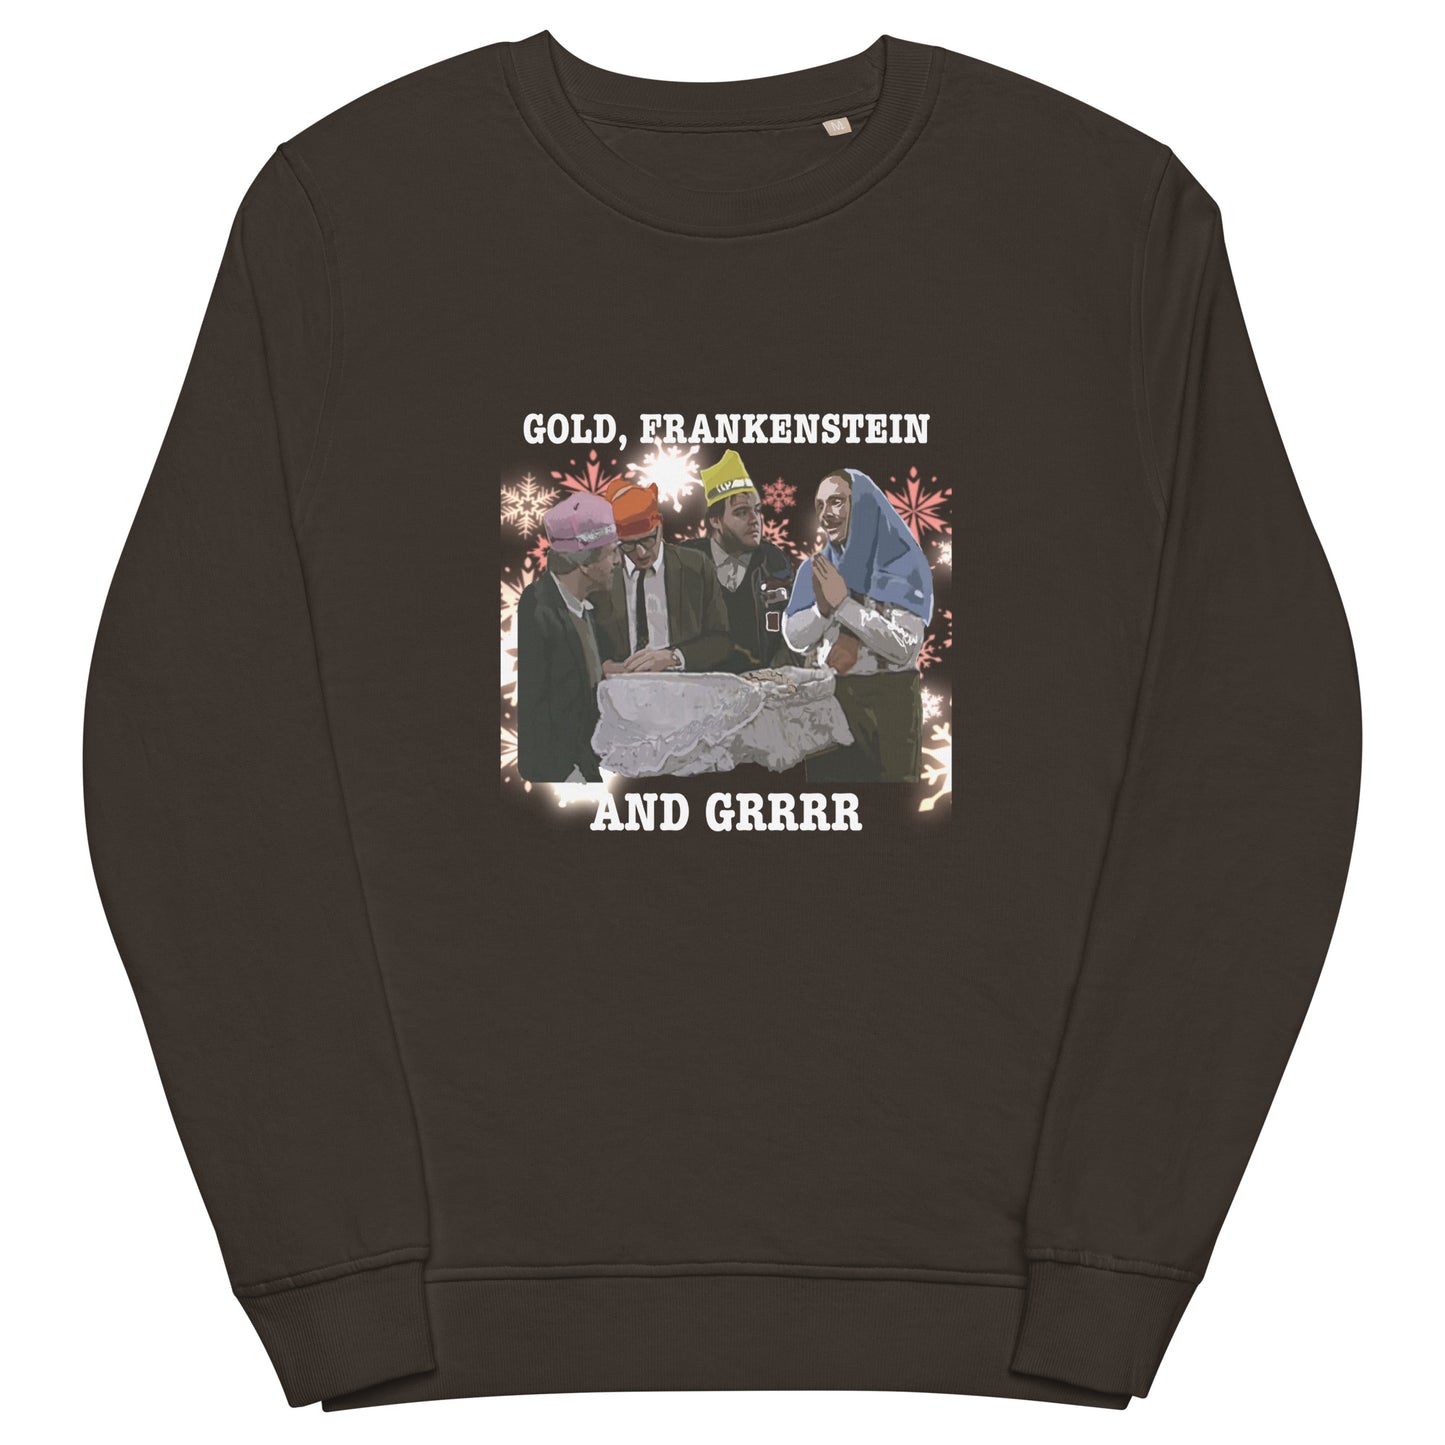 3 kings - Unisex organic sweatshirt